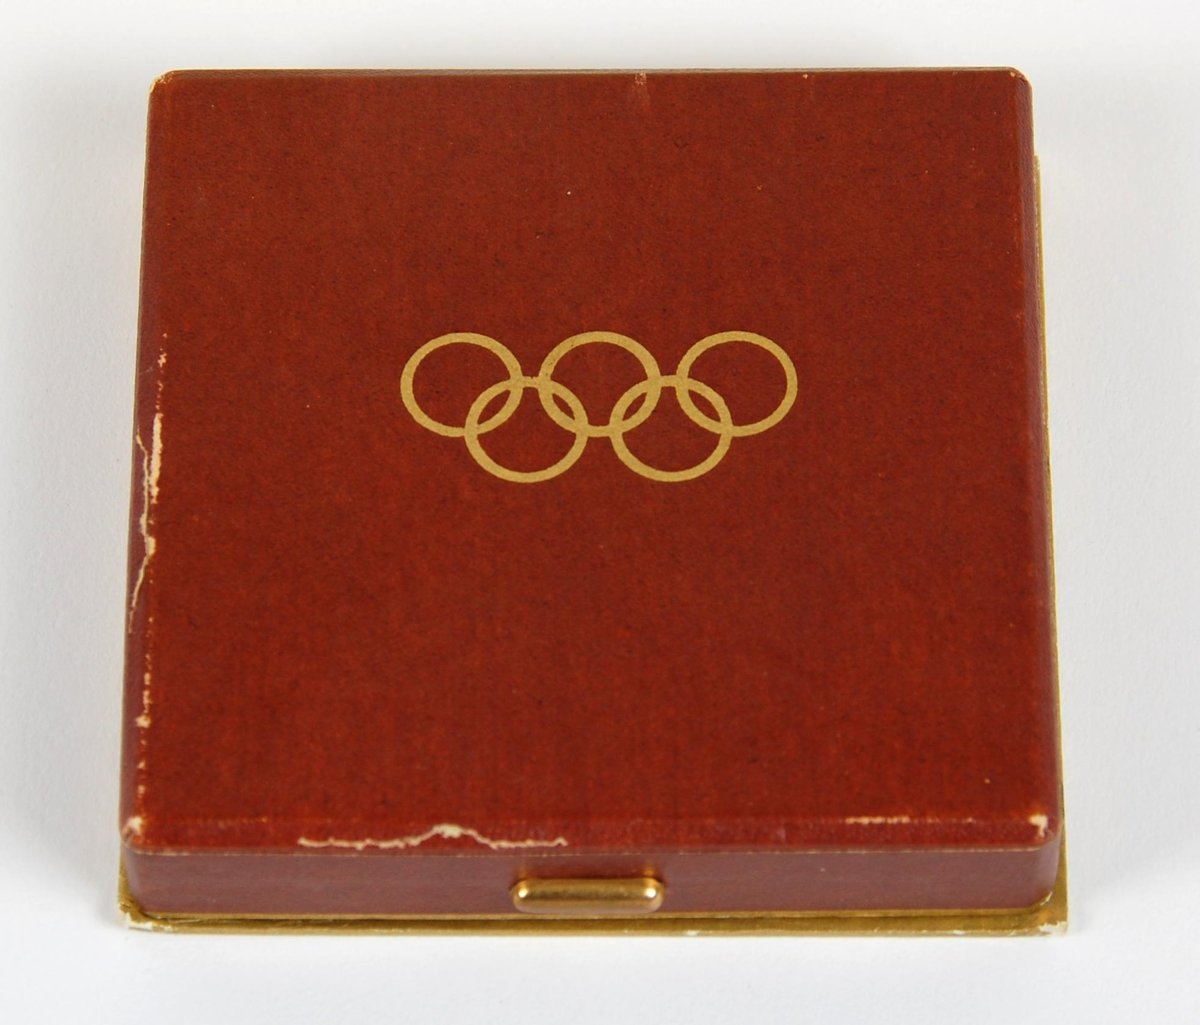 Kobberfarget medalje. På forsiden finner man emblemet til vinterlekene i 1952, som består av en siluett av Oslo rådhus og de olympiske ringer. På baksiden finner man det olympiske motto; citius - altius - fortius sammen med tre stiliserte snøkrystaller. Medaljen ligger i et brunt etui av papp med gullfargede olympiske ringer  på lokket